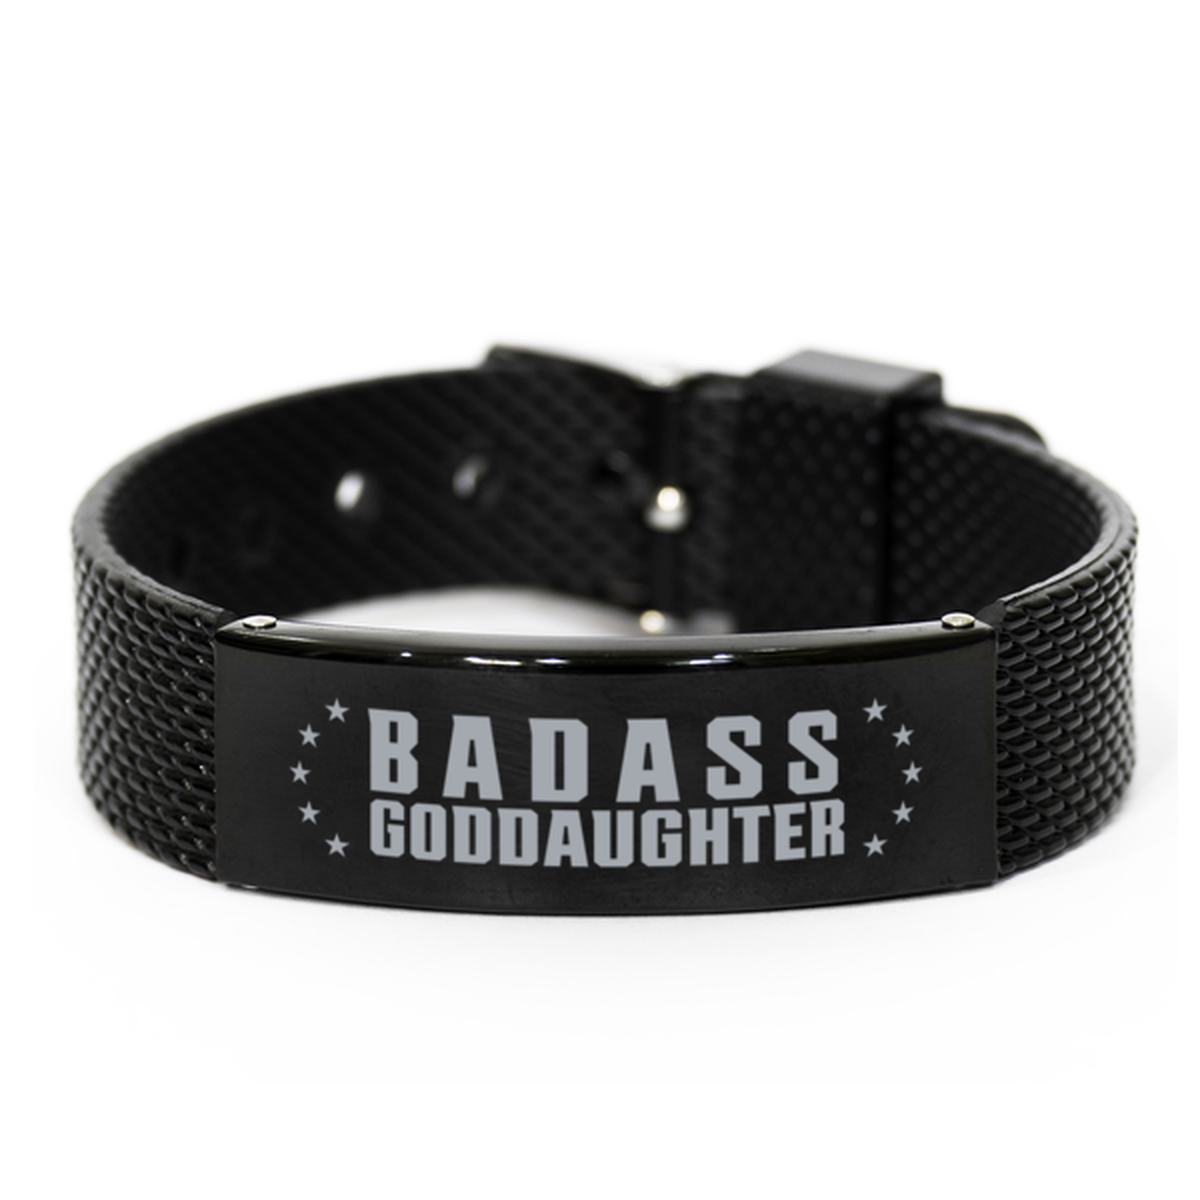 Goddaughter Black Shark Mesh Bracelet, Badass Goddaughter, Funny Family Gifts For Goddaughter From Godparent